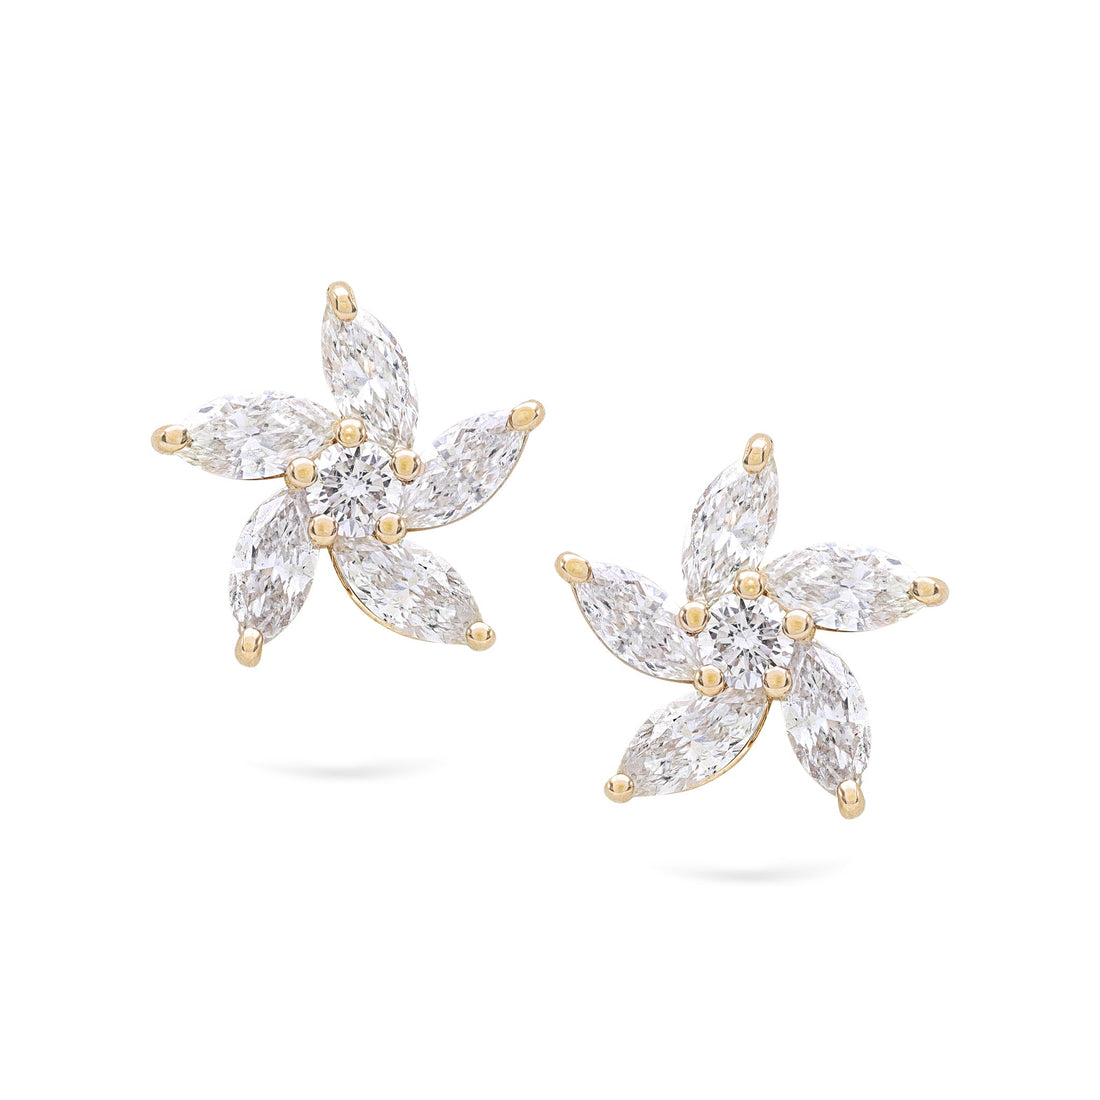 Jewelry Rose | Diamond Earrings | 0.78 Cts. | 18K Gold - Pair / Diamonds - earring Zengoda Shop online from